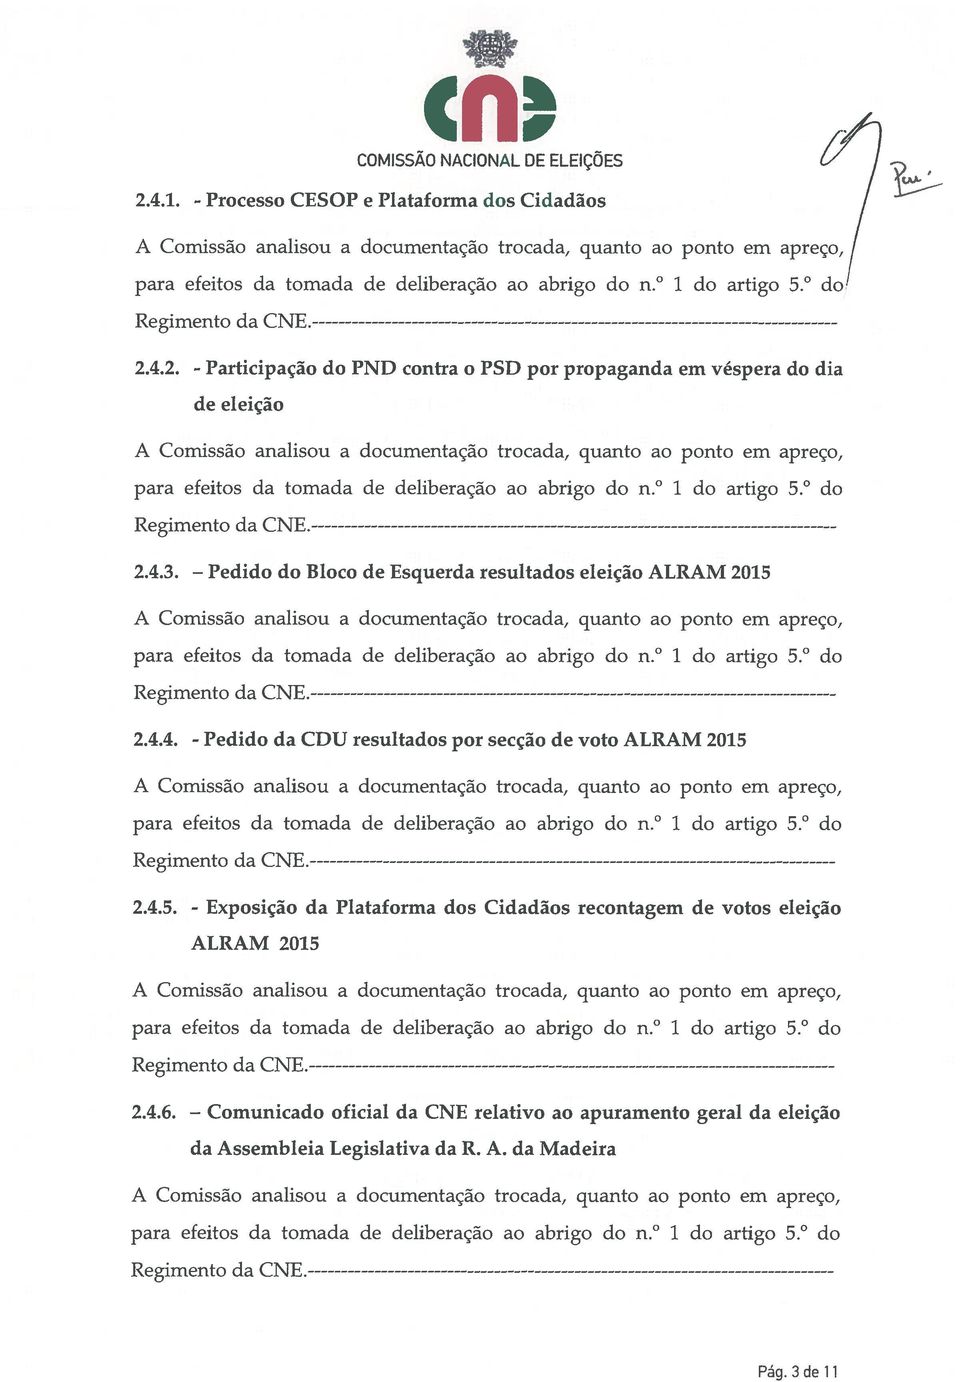 4.5. - Exposição da Plataforma dos Cidadãos recontagem de votos eleição ALRAM 2015 2.4.6.